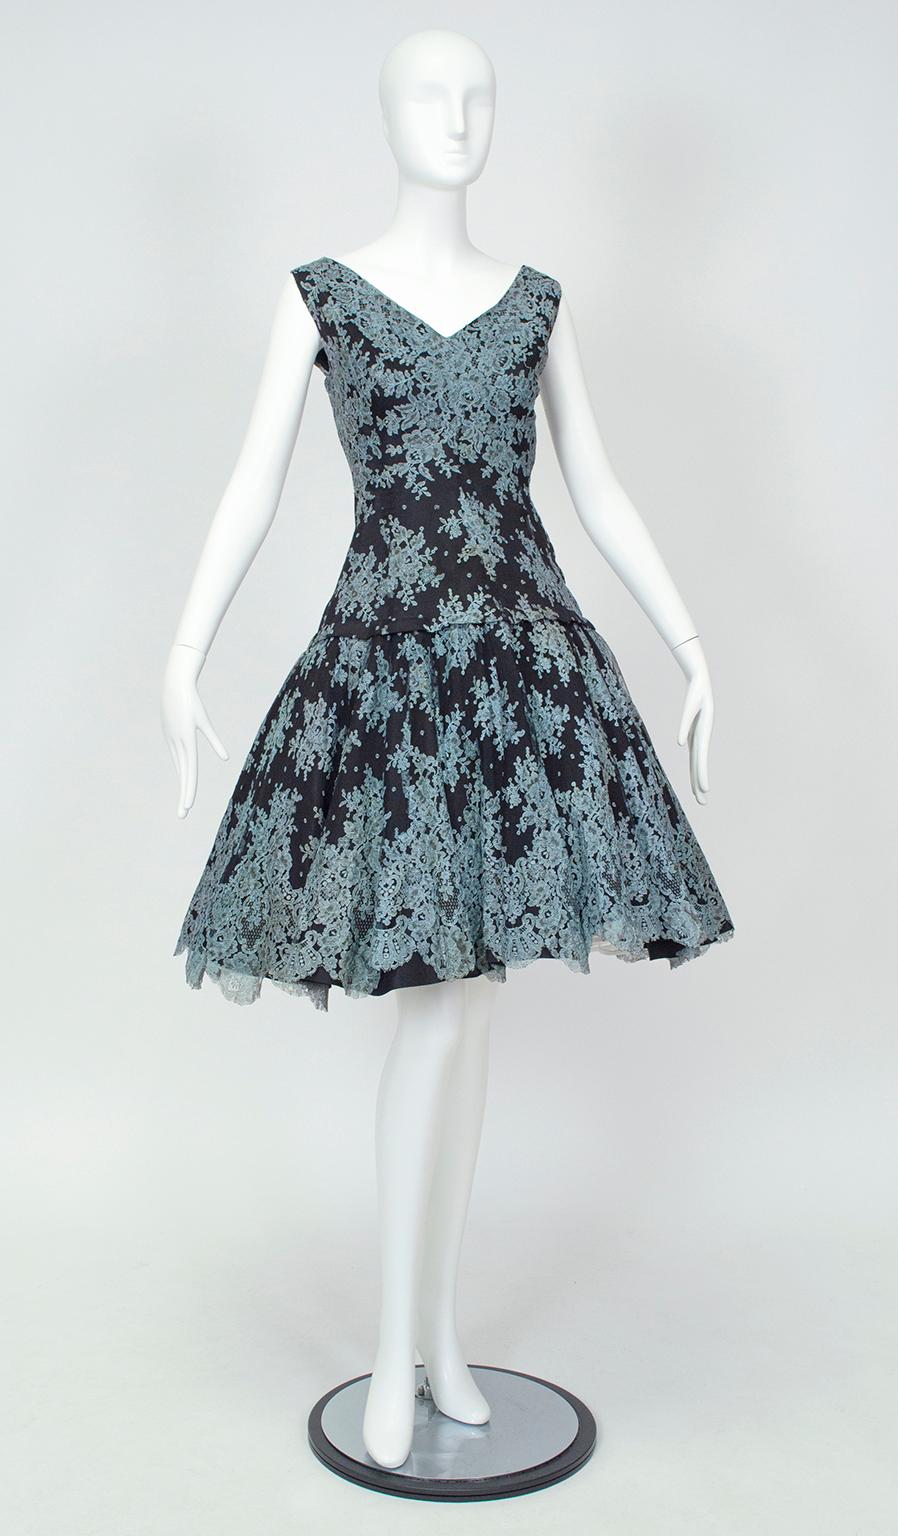 Dieses von Givenchy inspirierte Kleid im Stil von Audrey Hepburn besticht durch handgefertigte spanische Spitze, die aus einer riesigen Mantille geschnitten und in sorgfältiger Handarbeit auf einen schwarzen Tüllgrund genäht wurde. Das Muster der